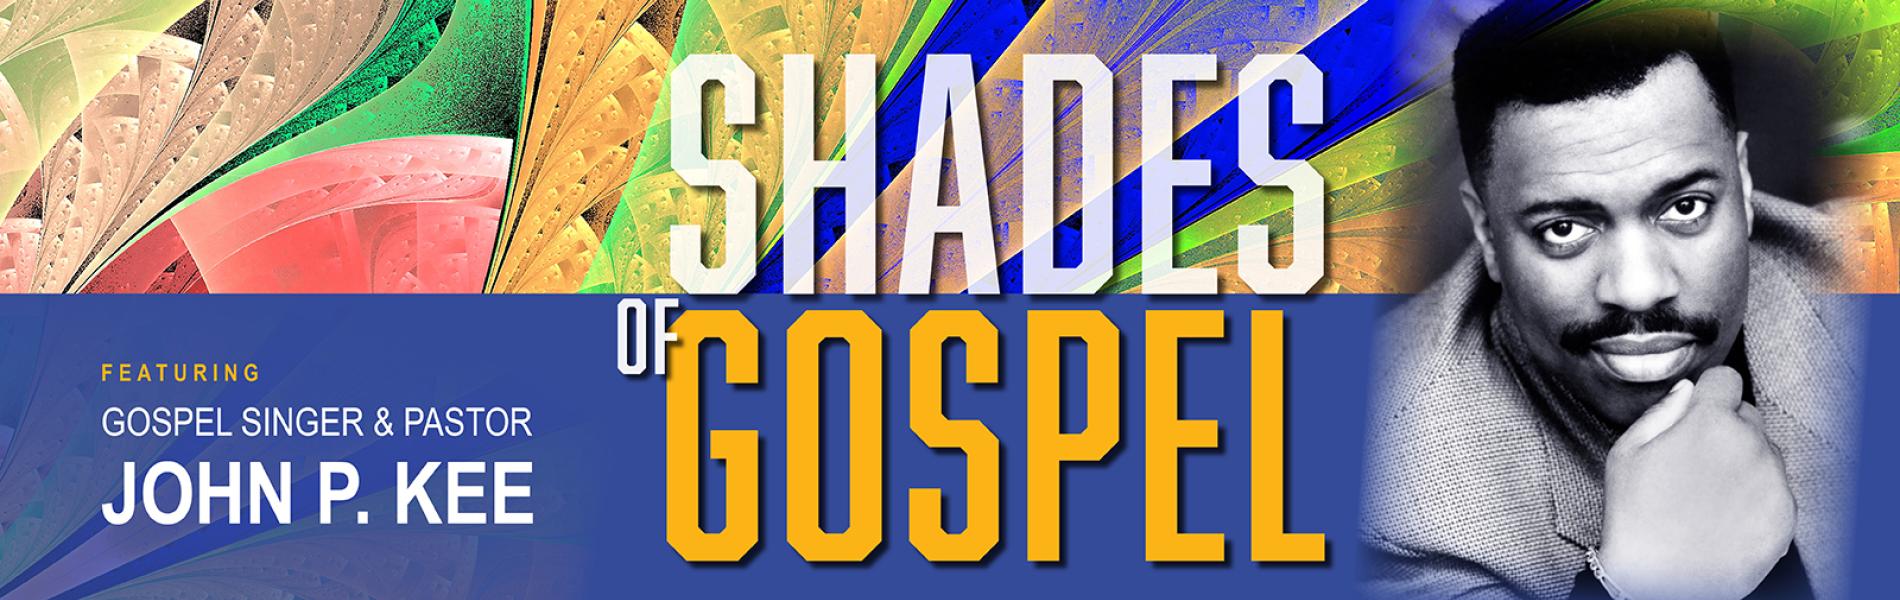 Shades of Gospel